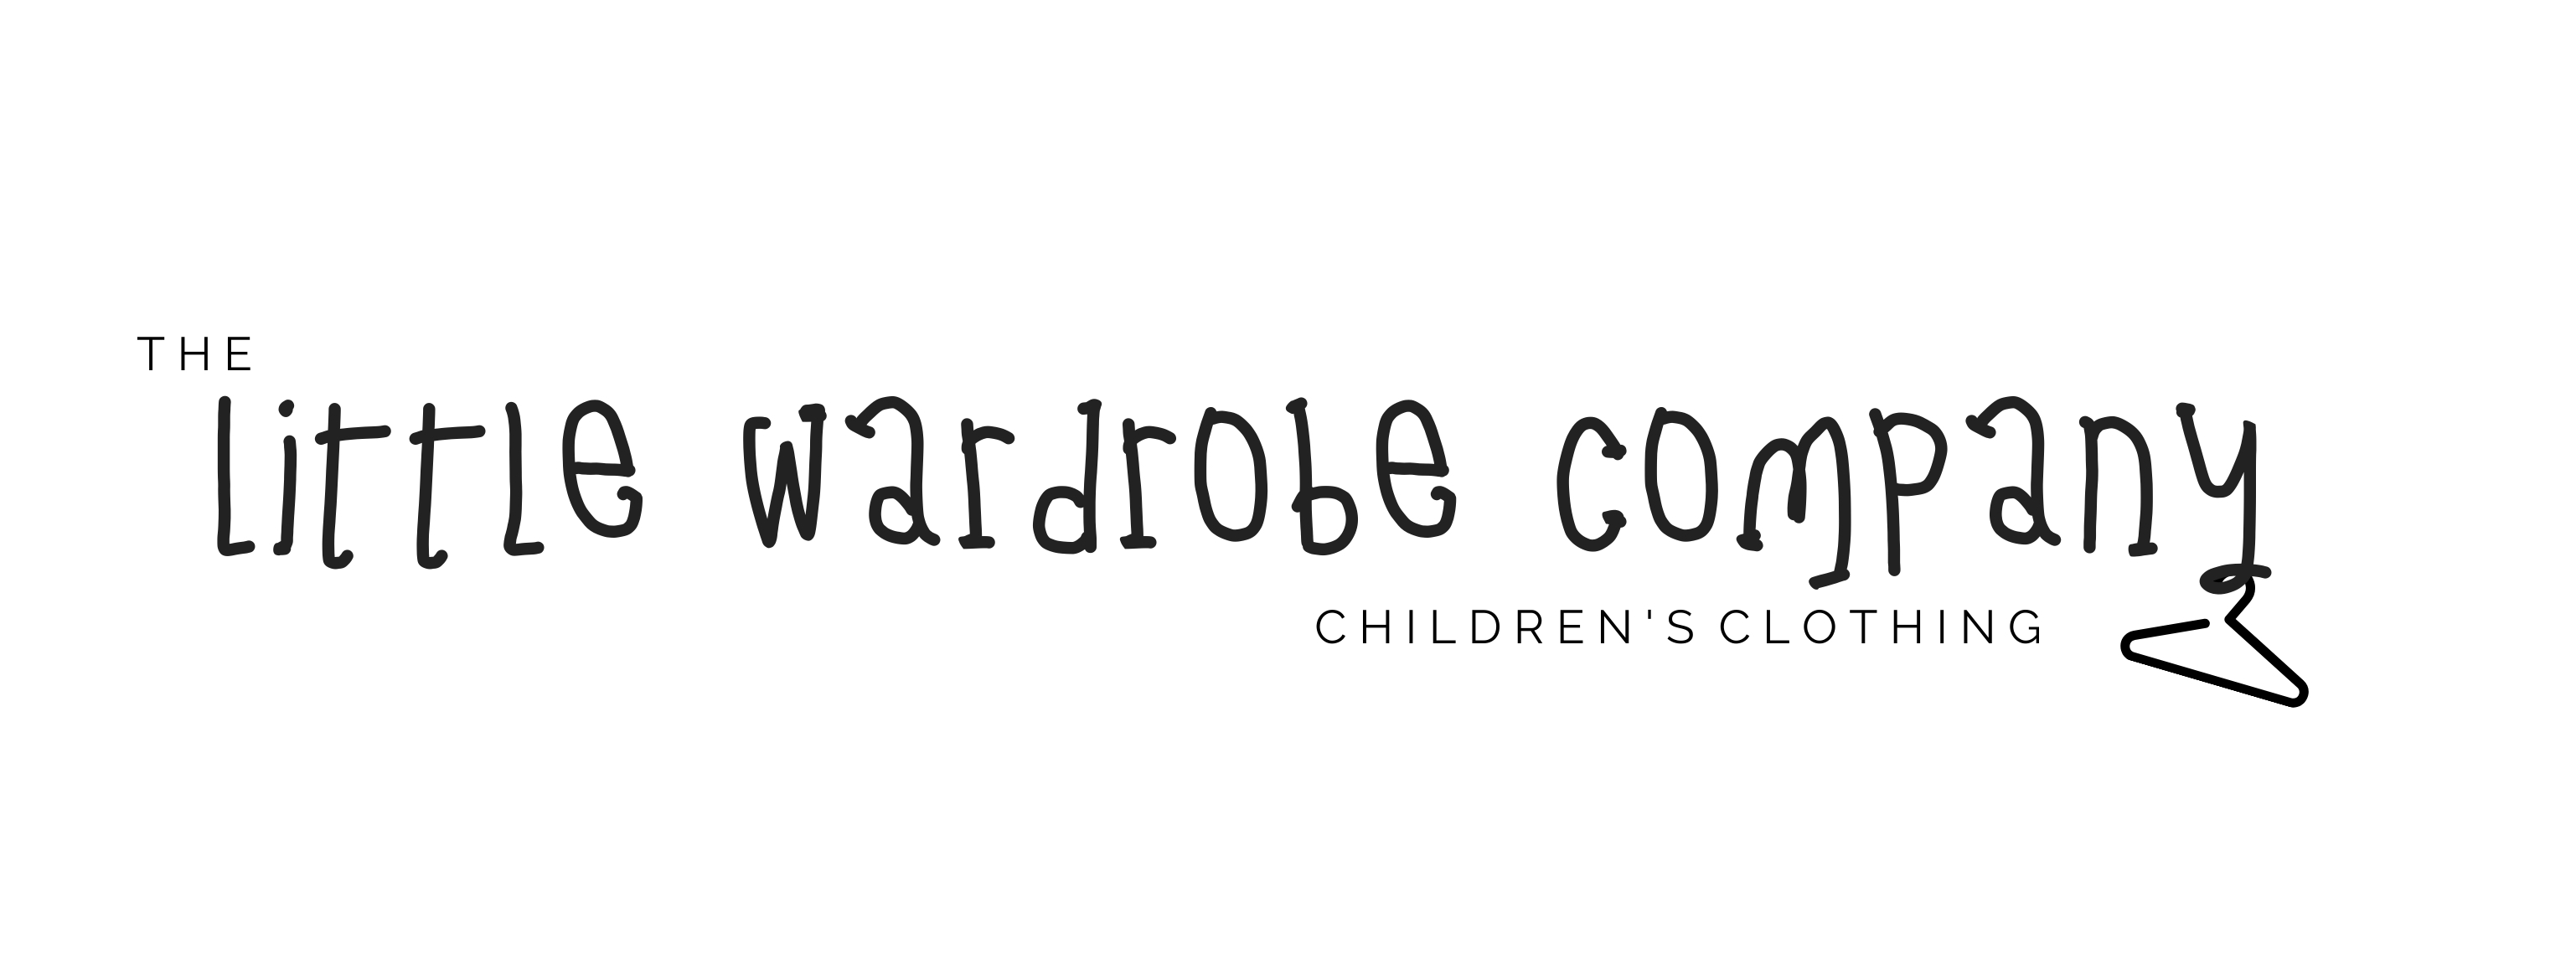 The Little Wardrobe Company's main image